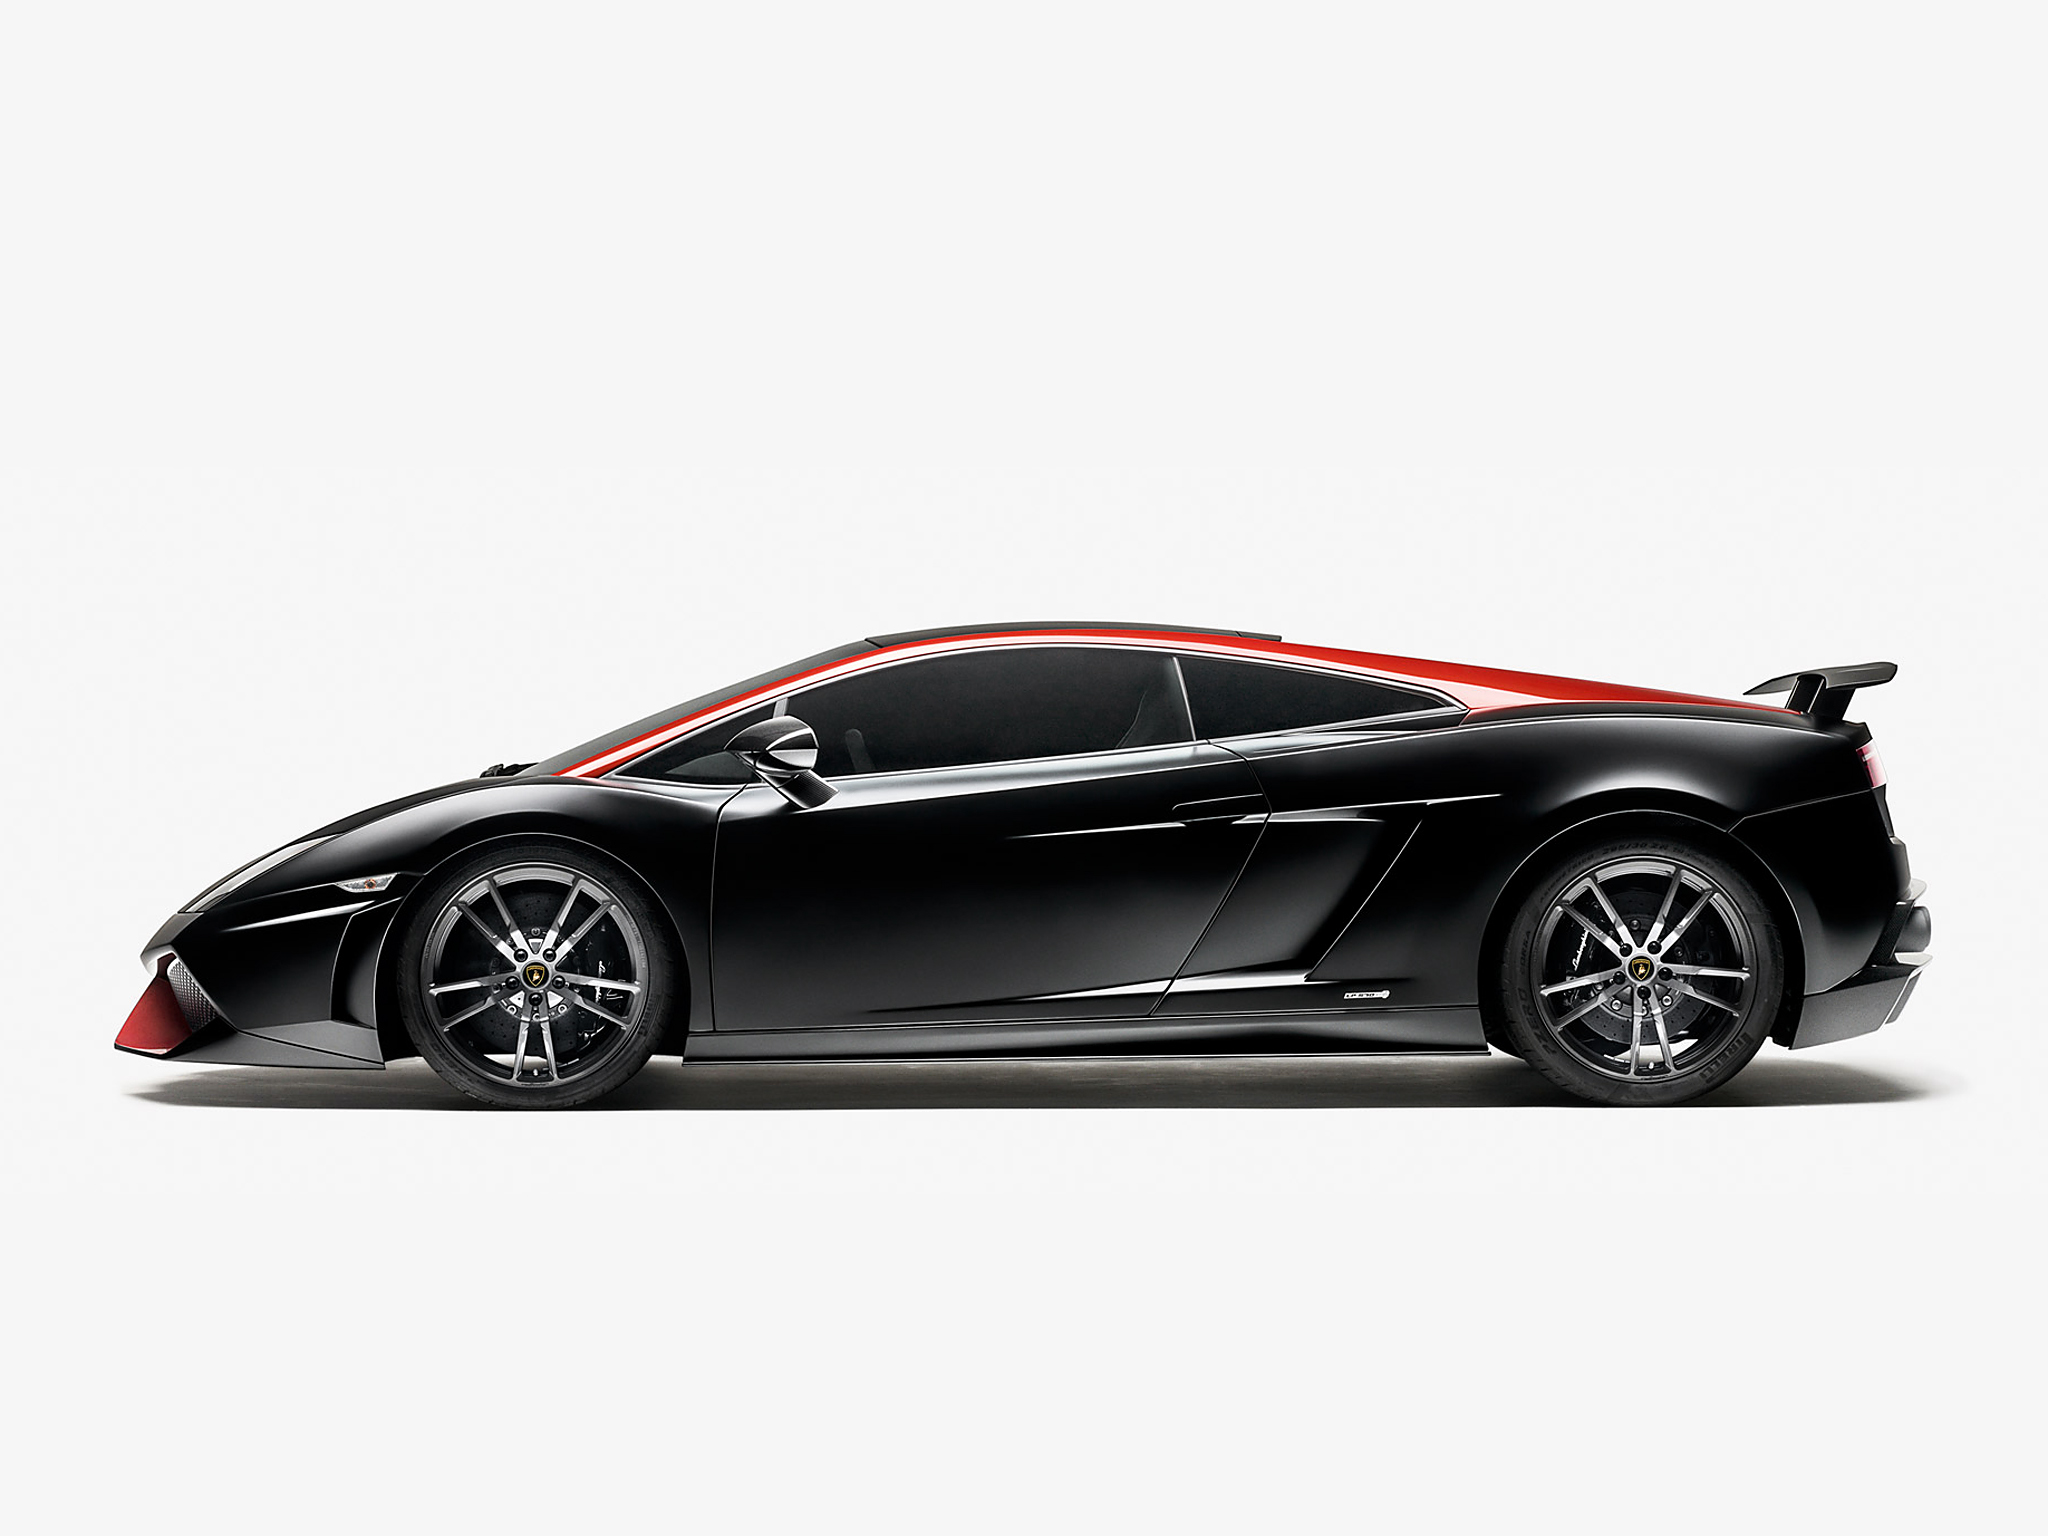 2012, Lamborghini, Gallardo, Lp570 4, Superleggera, Edizione, Tecnica, Supercar, Supercars, Fe Wallpaper